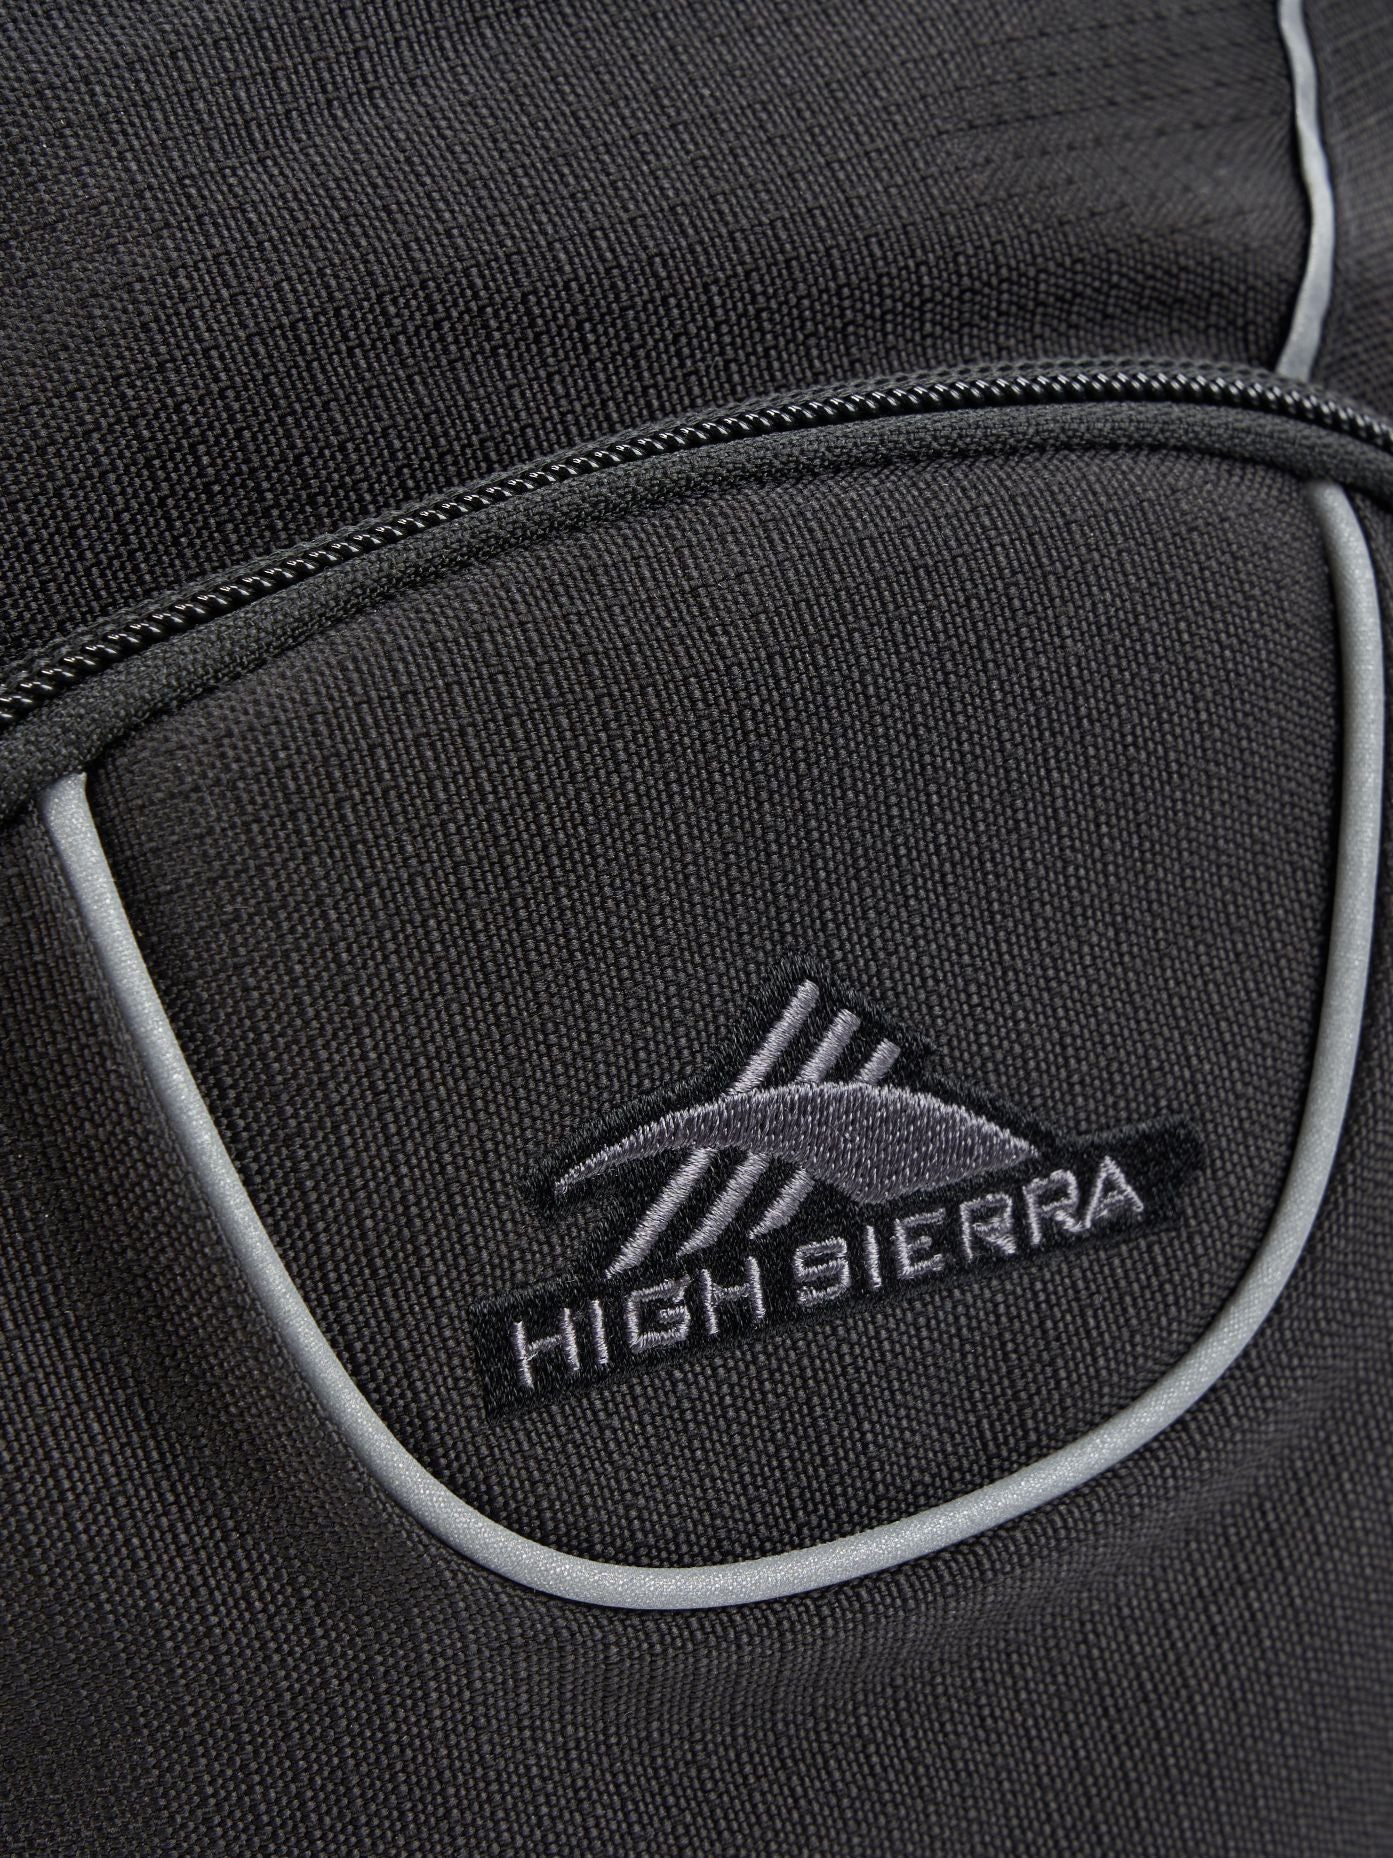 High Sierra - Academy 3.0 Backpack Eco - Black-8